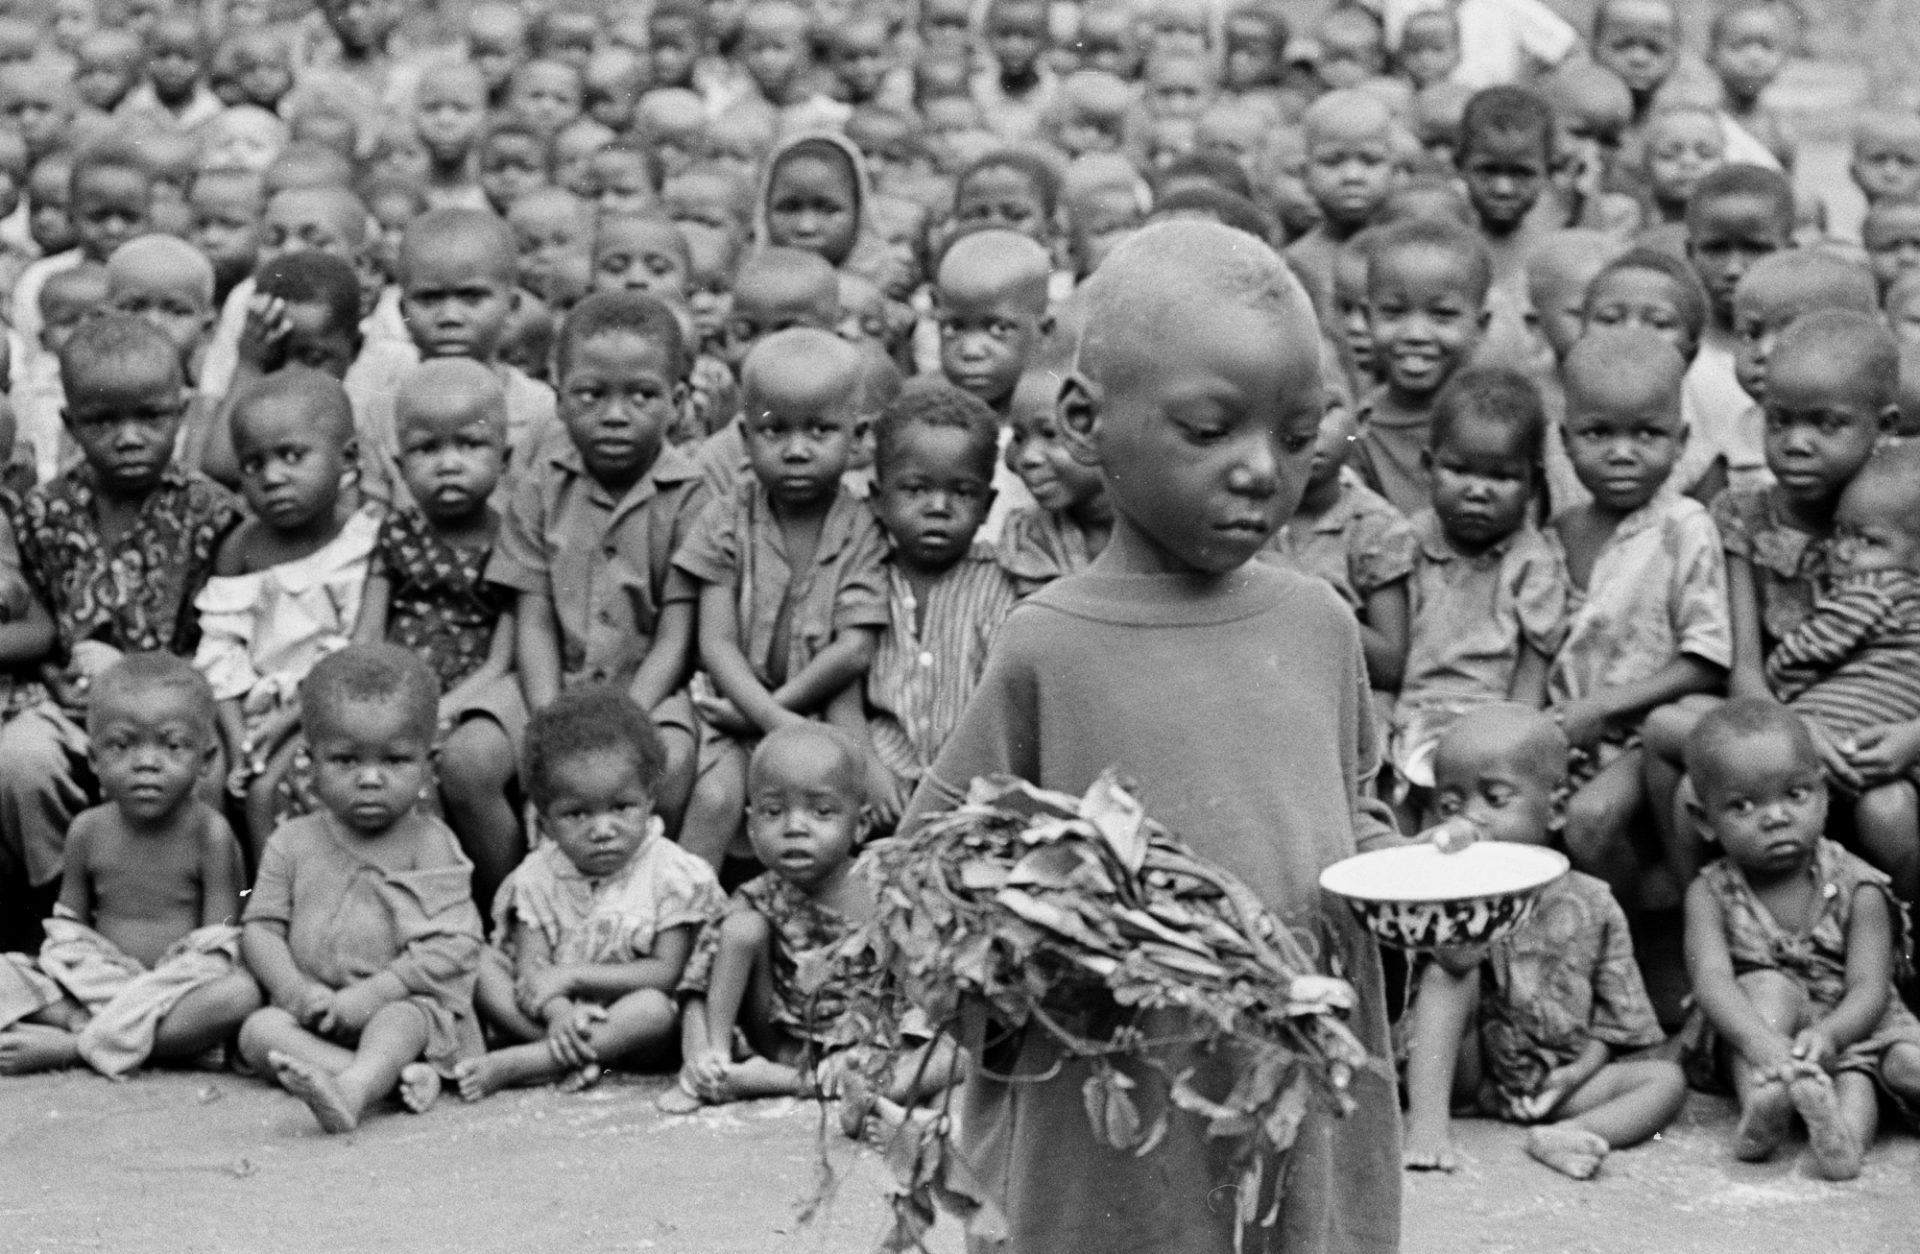 1968: Μαίνεται ο εμφύλιος πόλεμος στη Νιγηρία, ενώ η πείνα θερίζει τη Μπιάφρα. Σύμφωνα με τον Ερυθρό Σταυρό, τουλάχιστον  έως 10 χιλιάδες άτομα πεθαίνουν κάθε μέρα, στην πλειοψηφία τους μικρά παιδιά, πολλά εκ των οποίων είναι ορφανά.